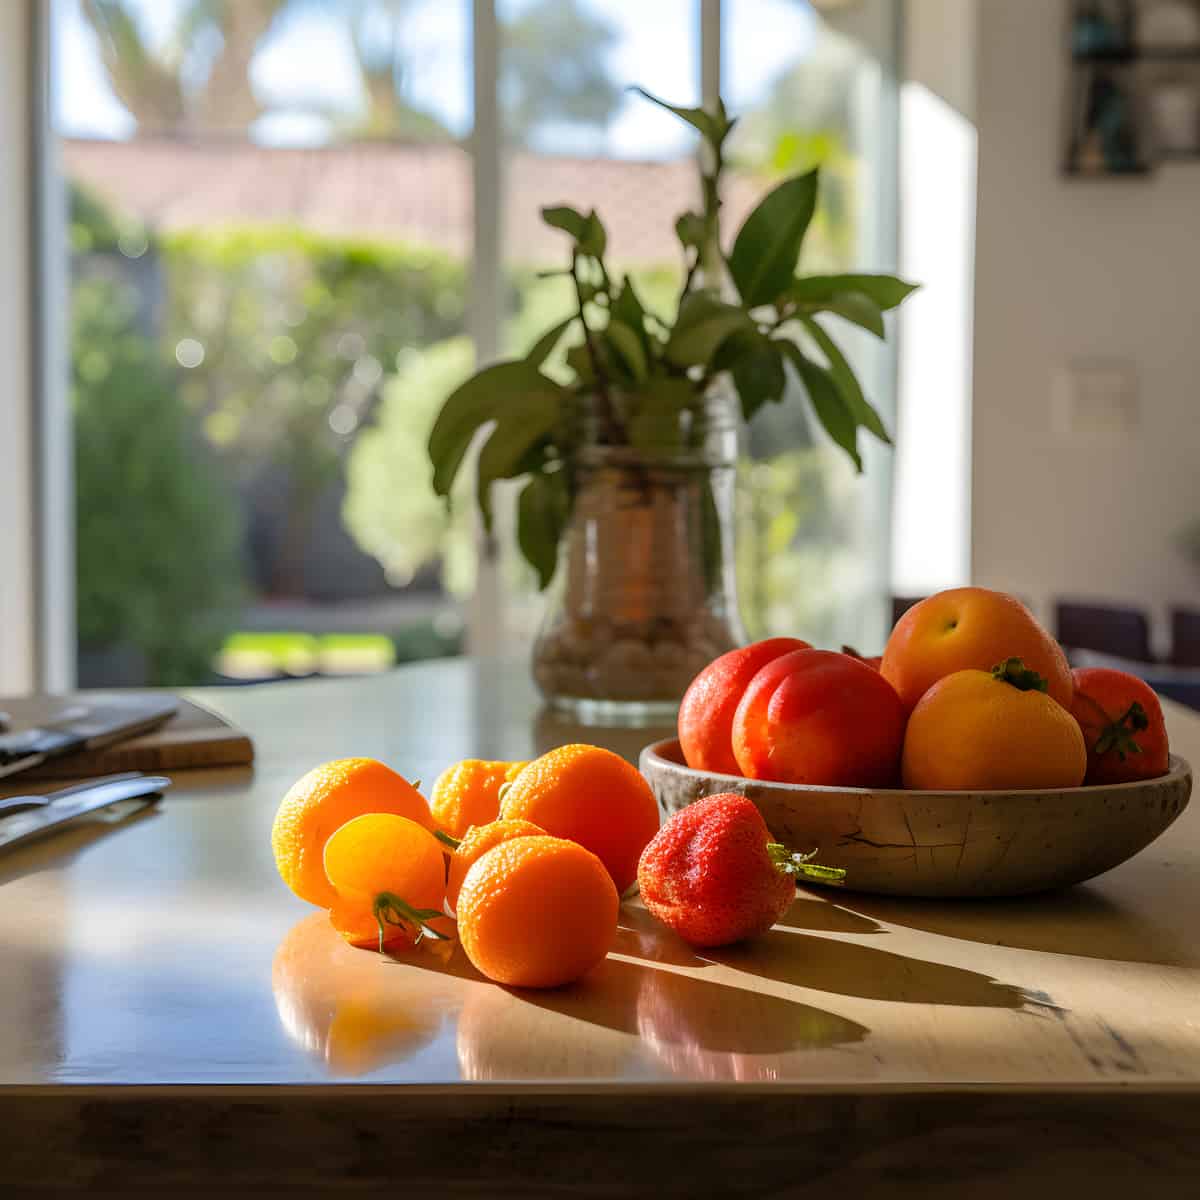 Ojai Pixie Fruit on a kitchen counter